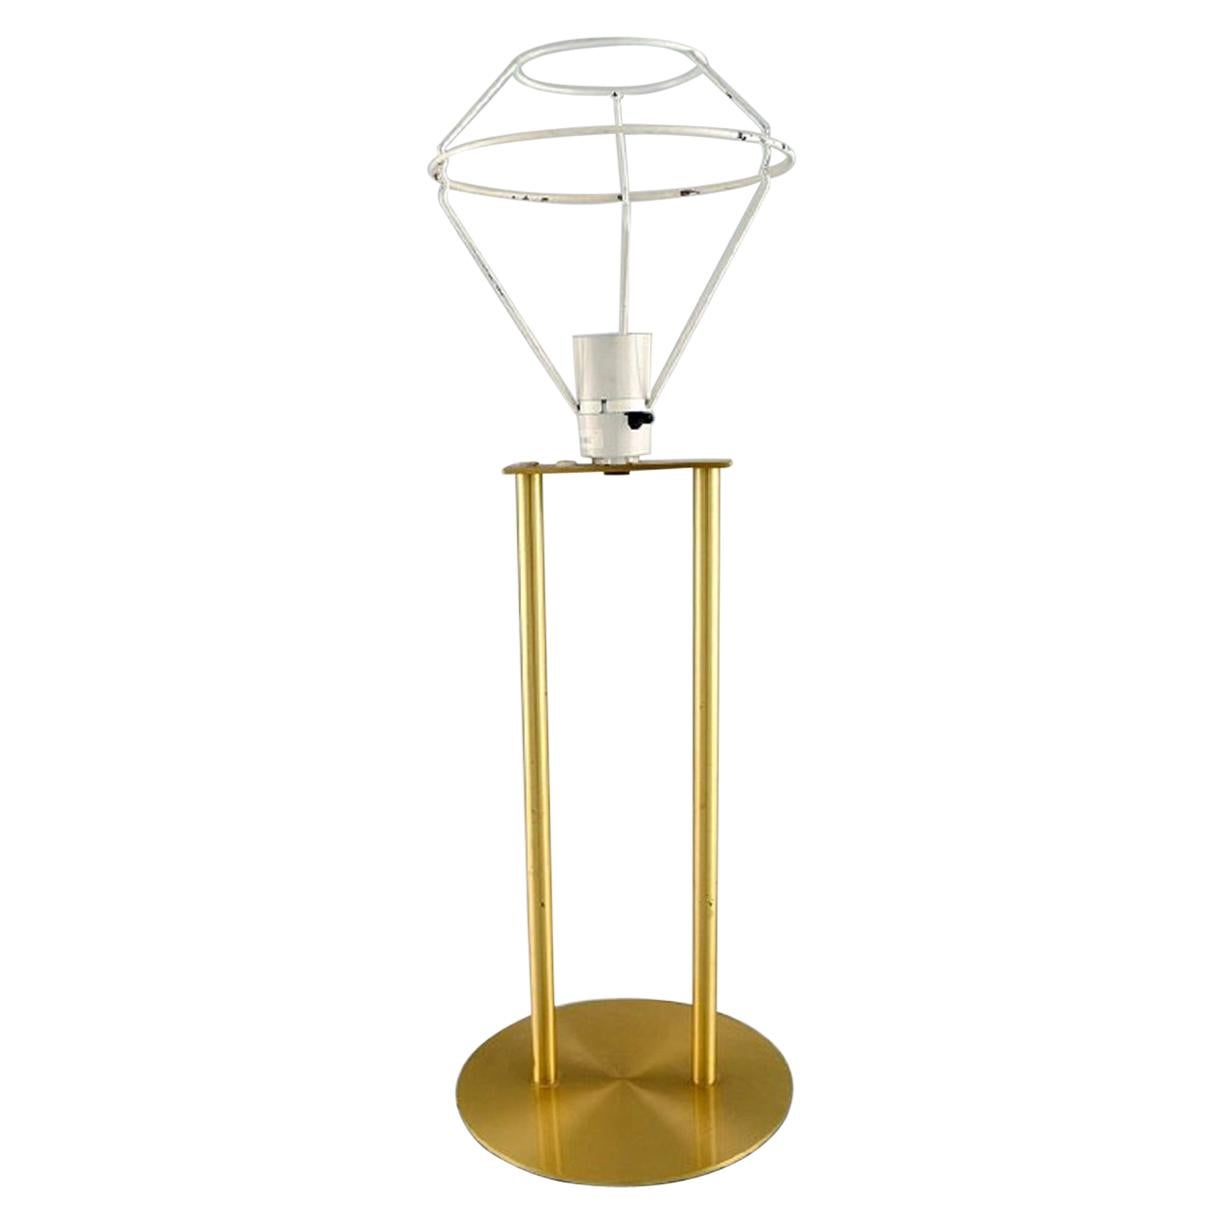 Le Klint Table Lamp in Brass, Danish Design, 1970s